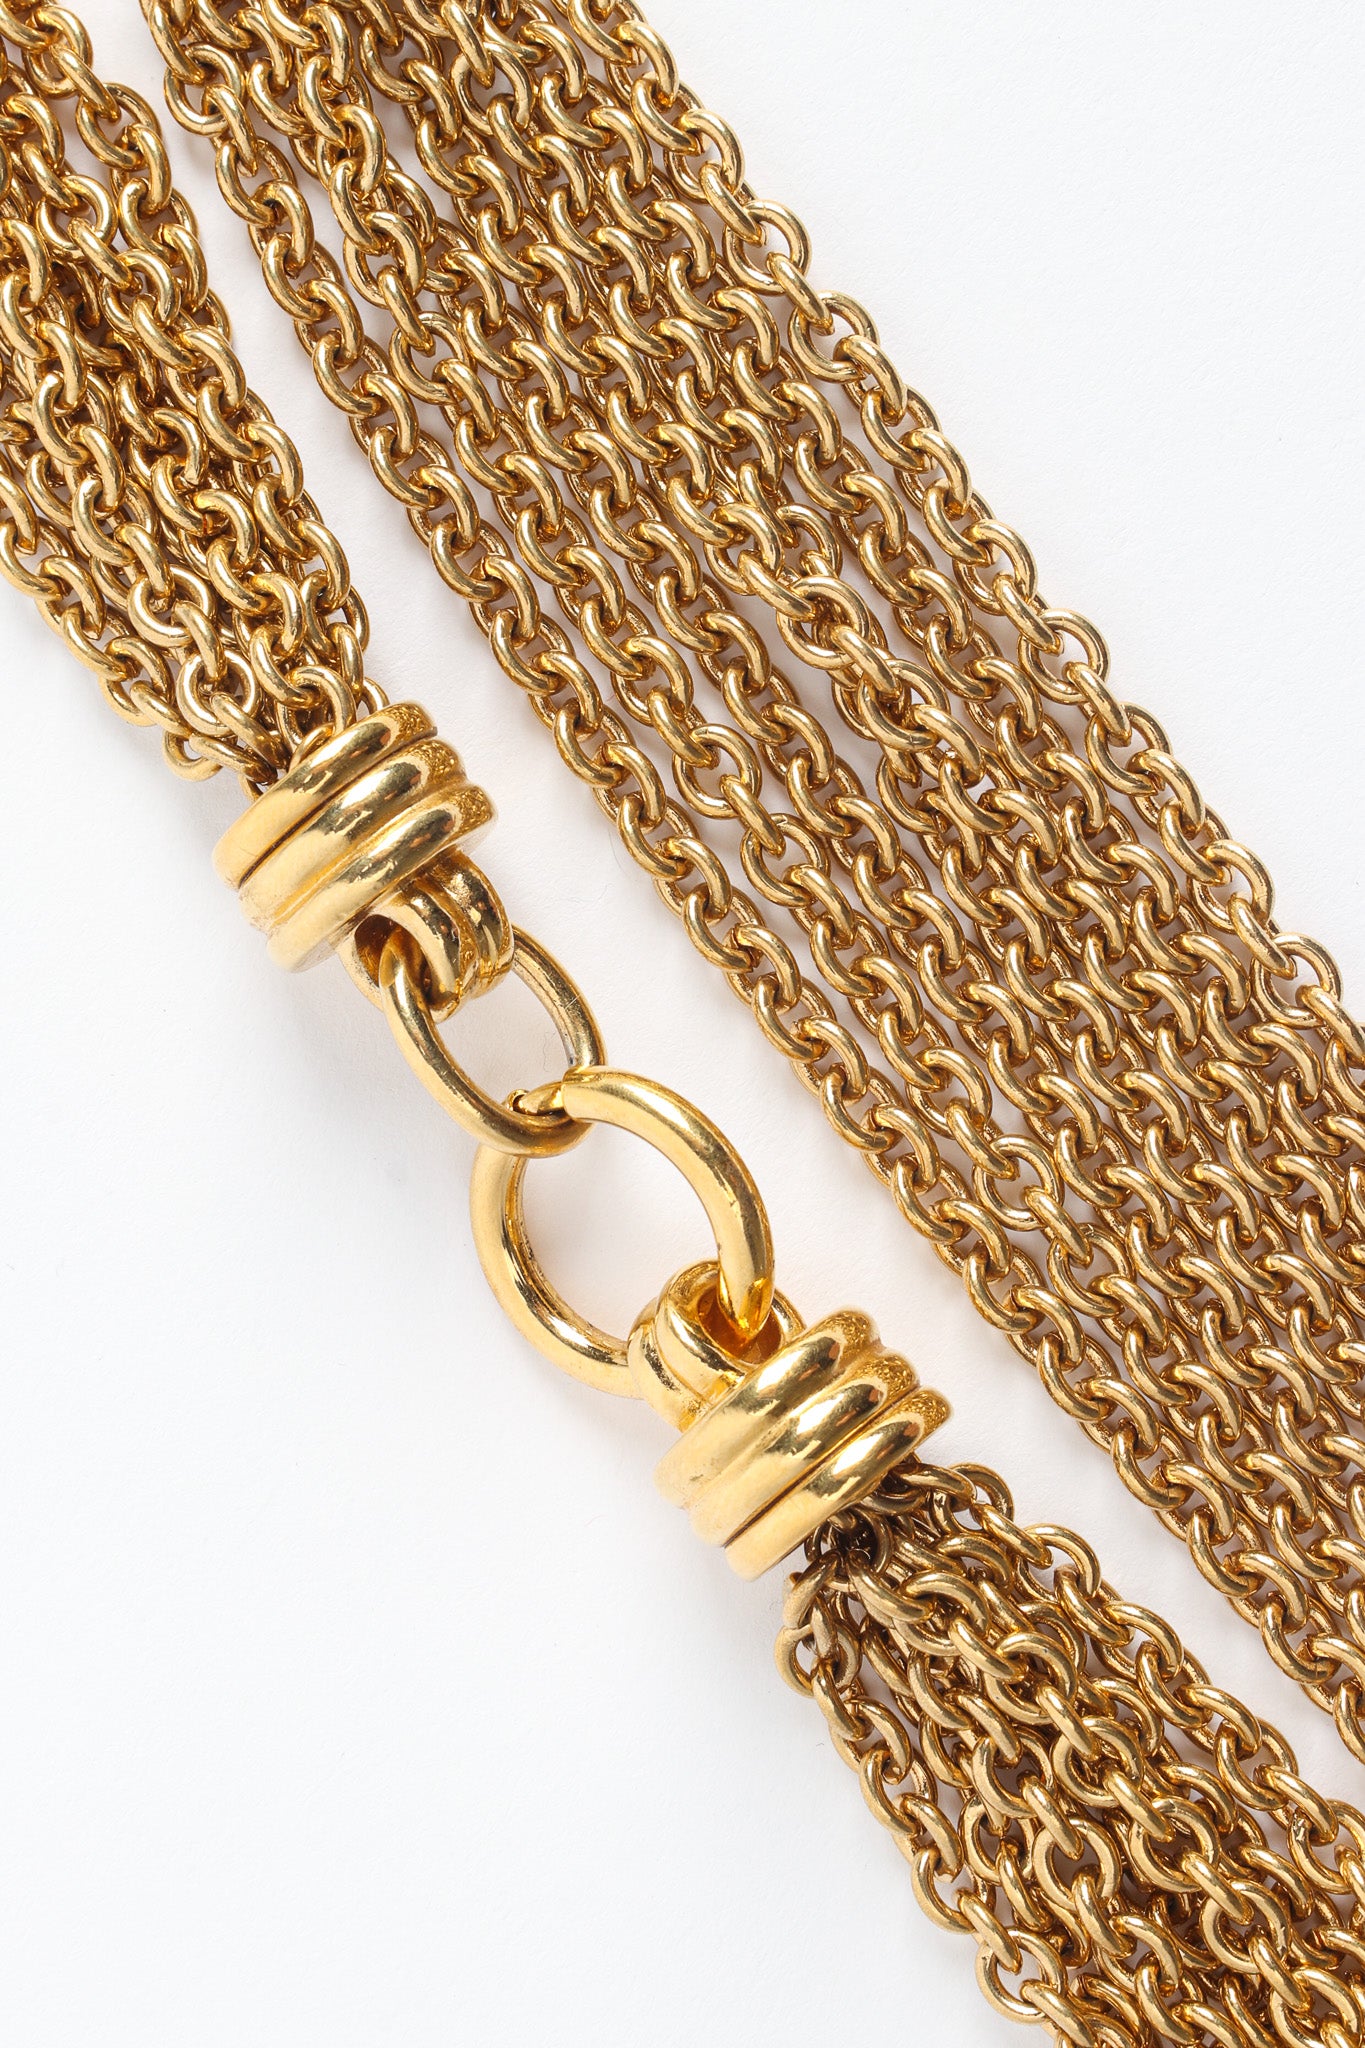 Vintage 7 Strand Link Necklace spring clasp @ Recess Los Angeles